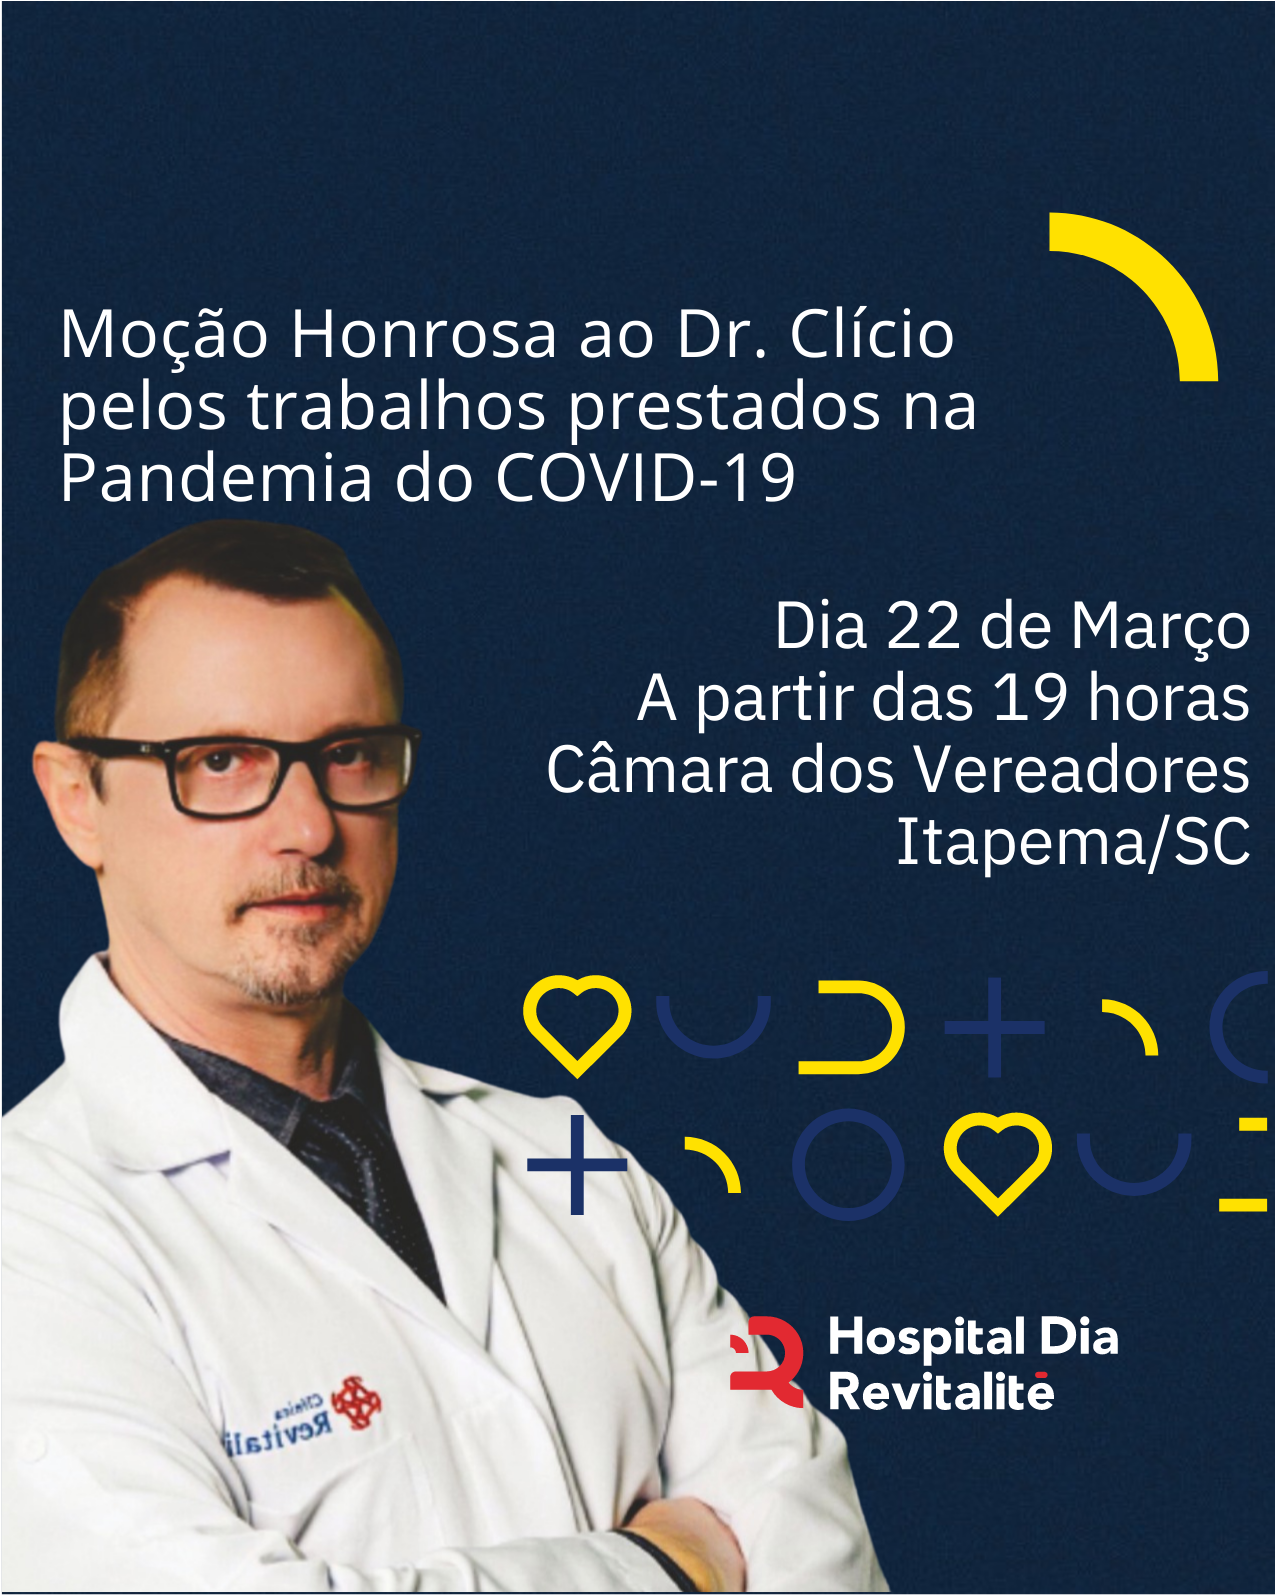 MOÇÃO HONROSA DR. CLÍCIO